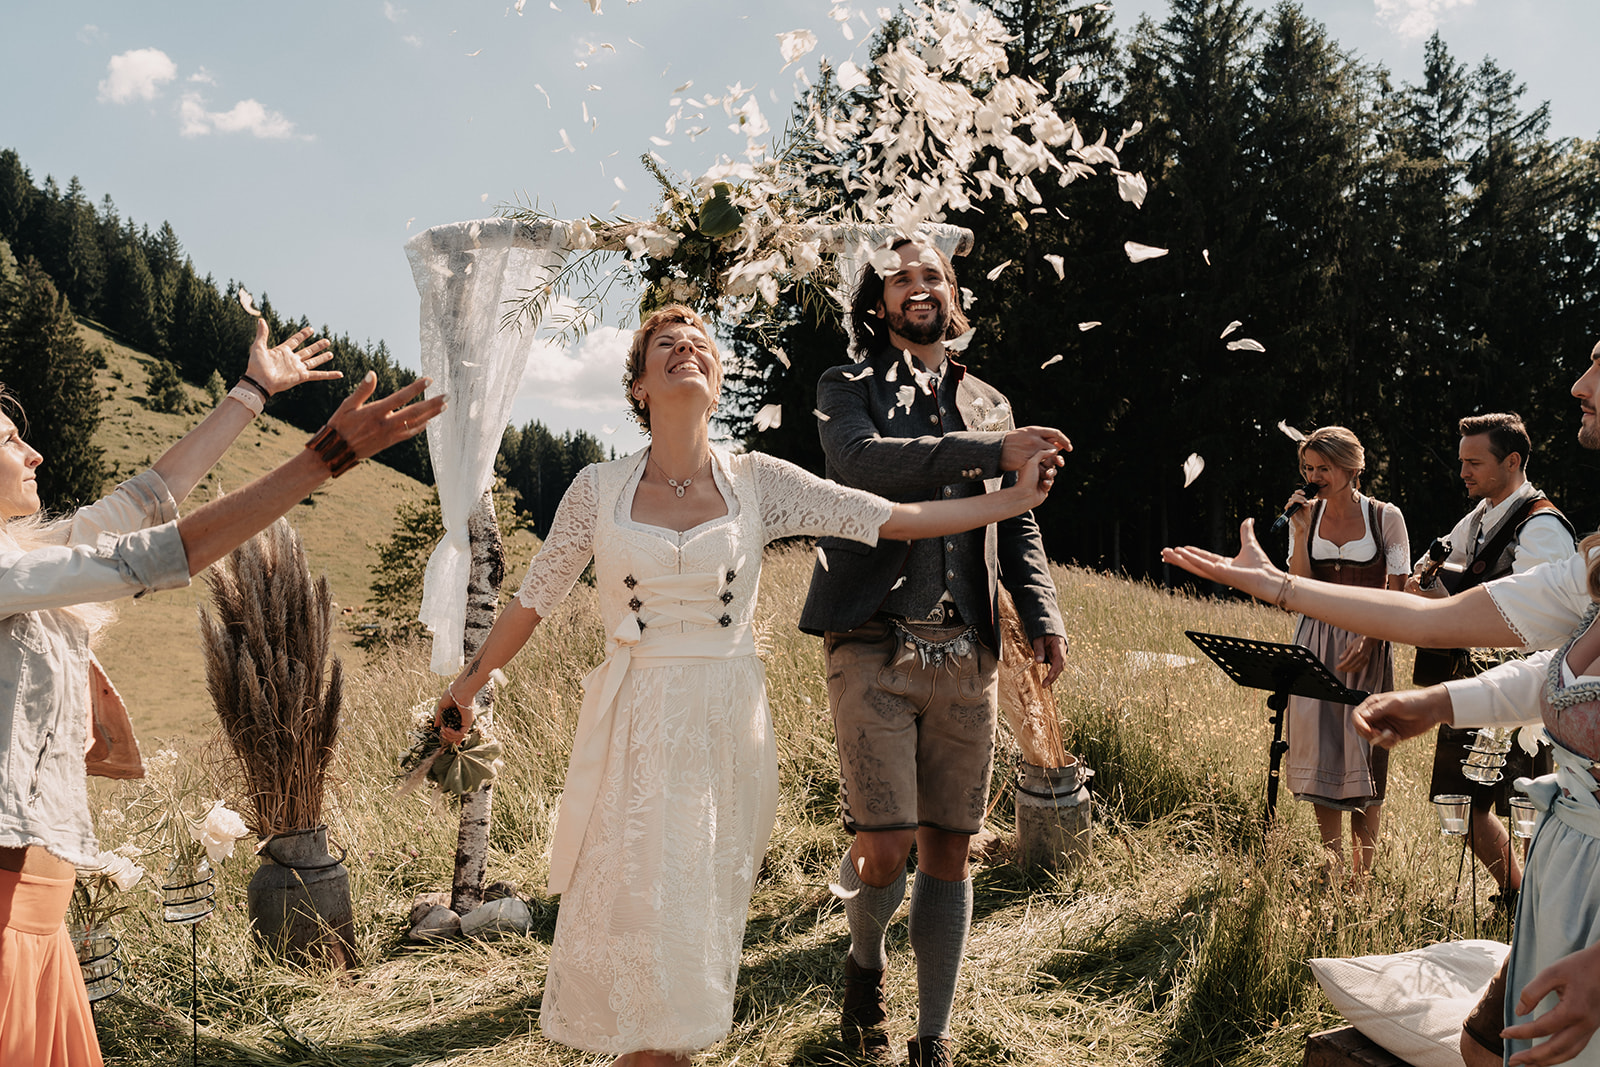 Freie Trauung in den Bergen | Brautpaar im Blumenregen | Strauß & Fliege